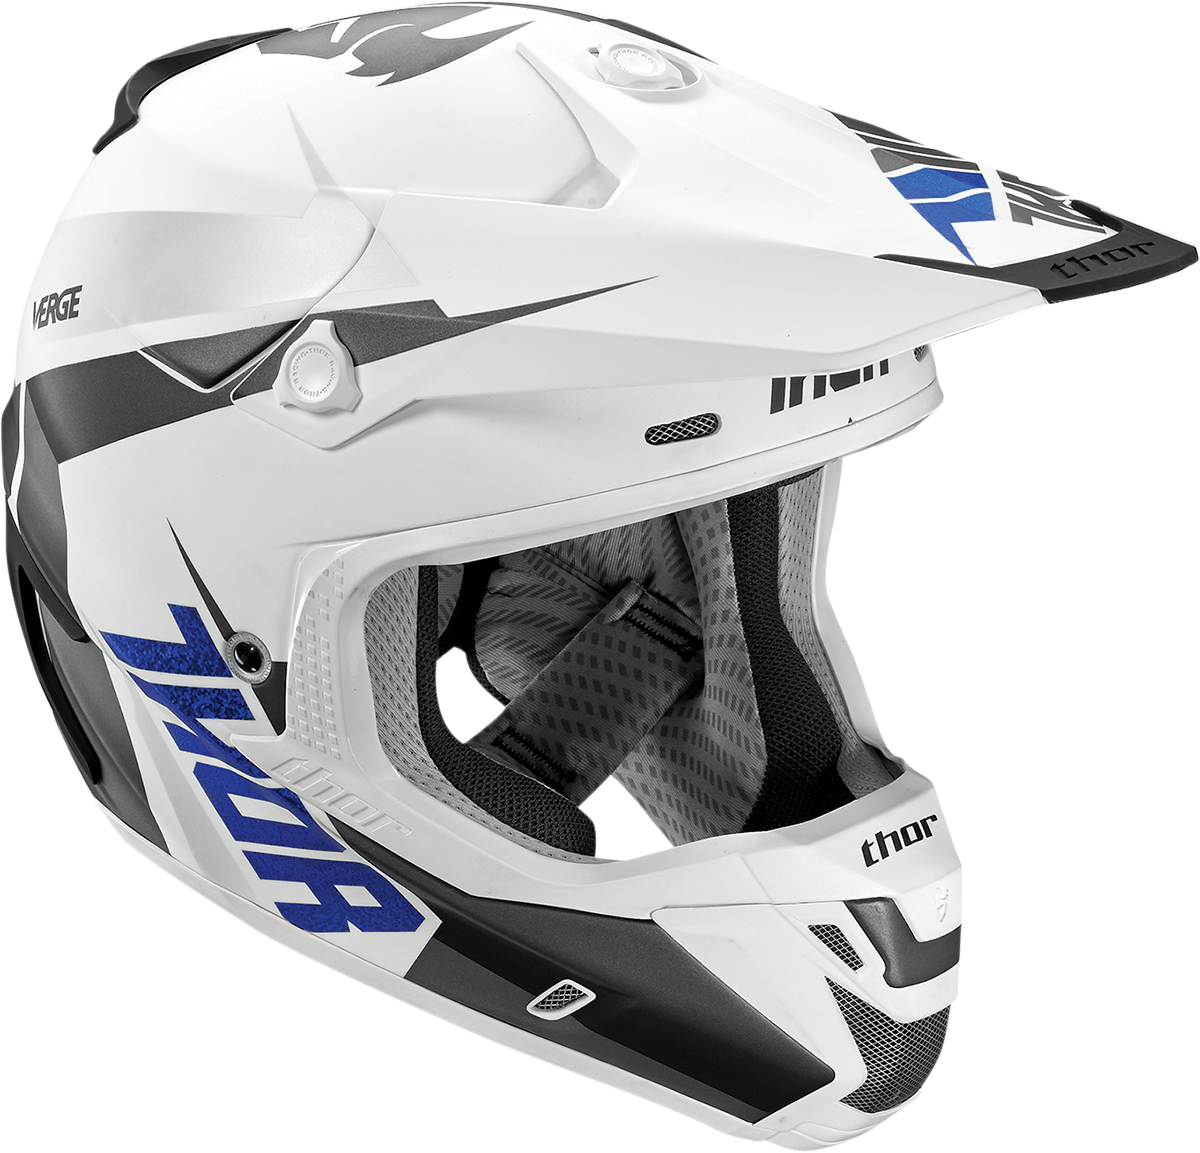 Imagem transparente do PNG do capacete do motocross